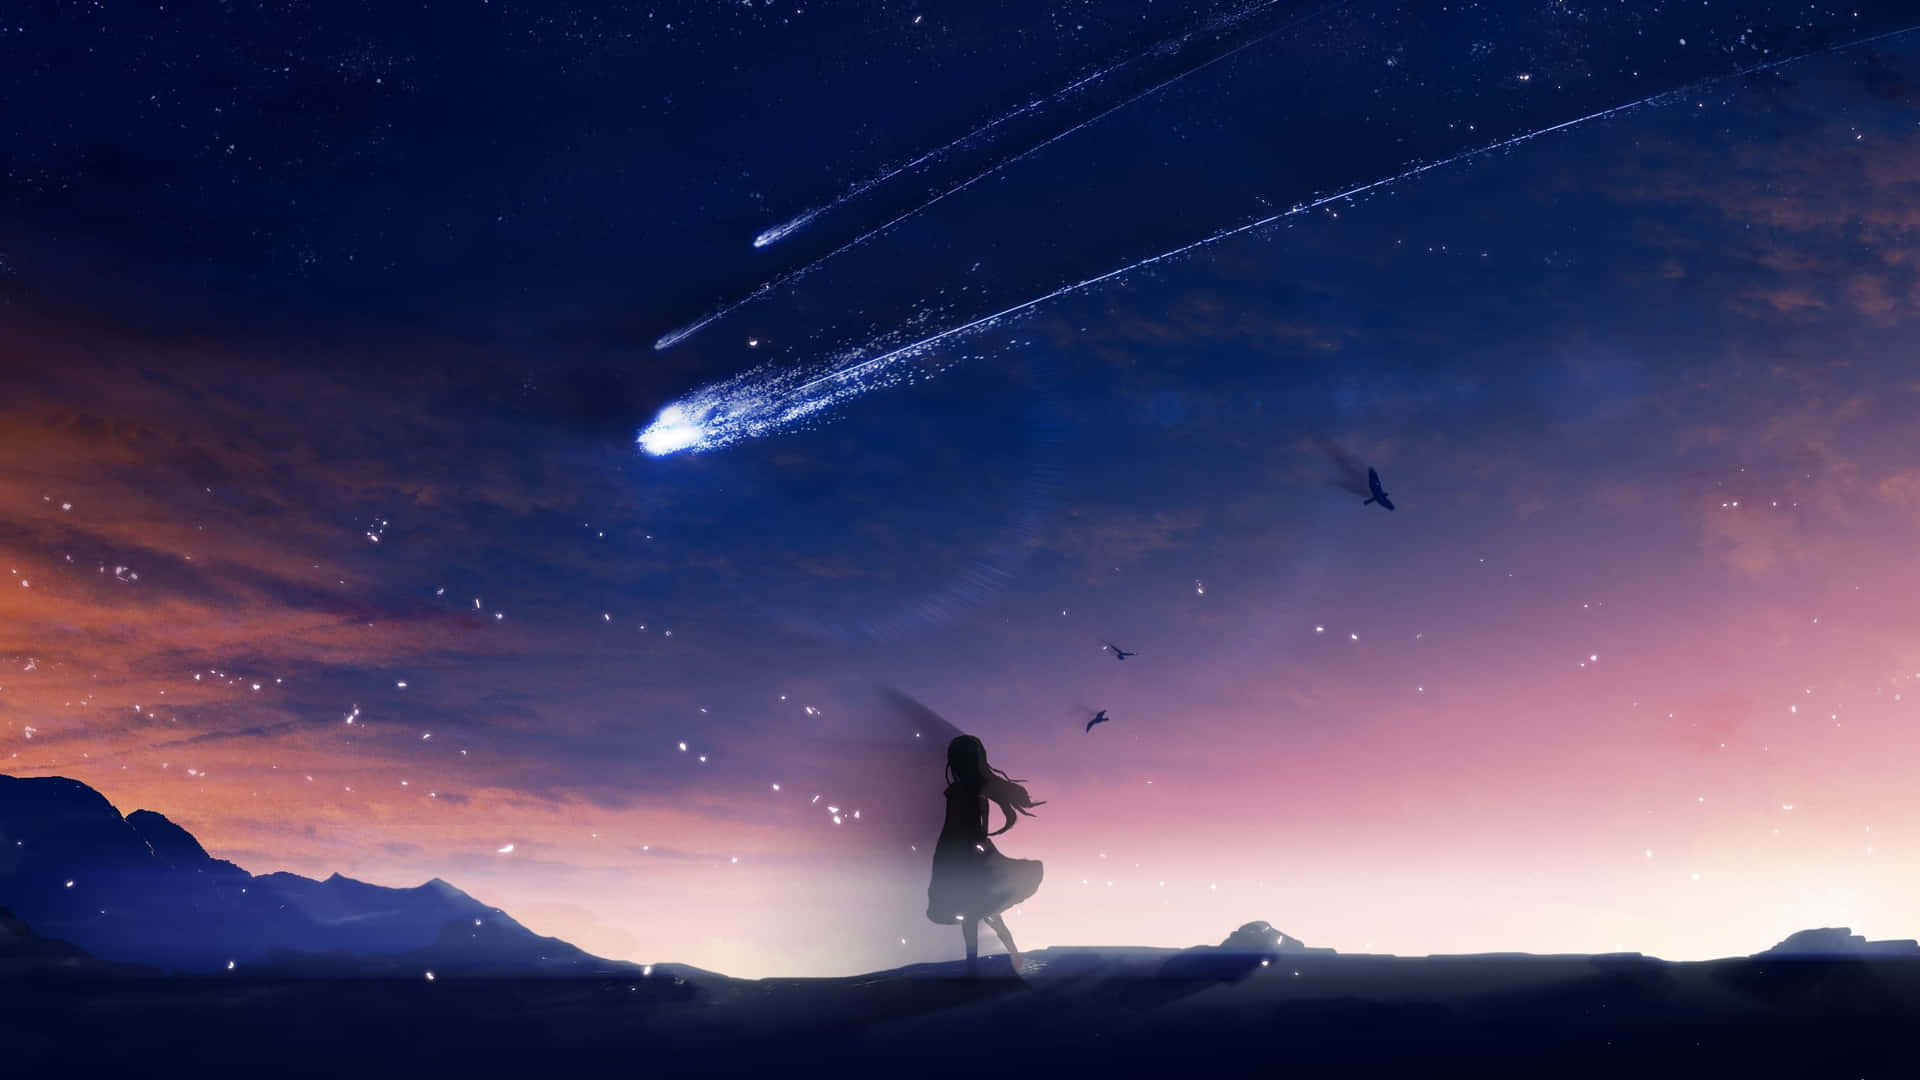 Anime Landscape | Anime Landscape: Sky Anime Landscape [Scenery -  Background] | Sky anime, Anime background, Scenery background